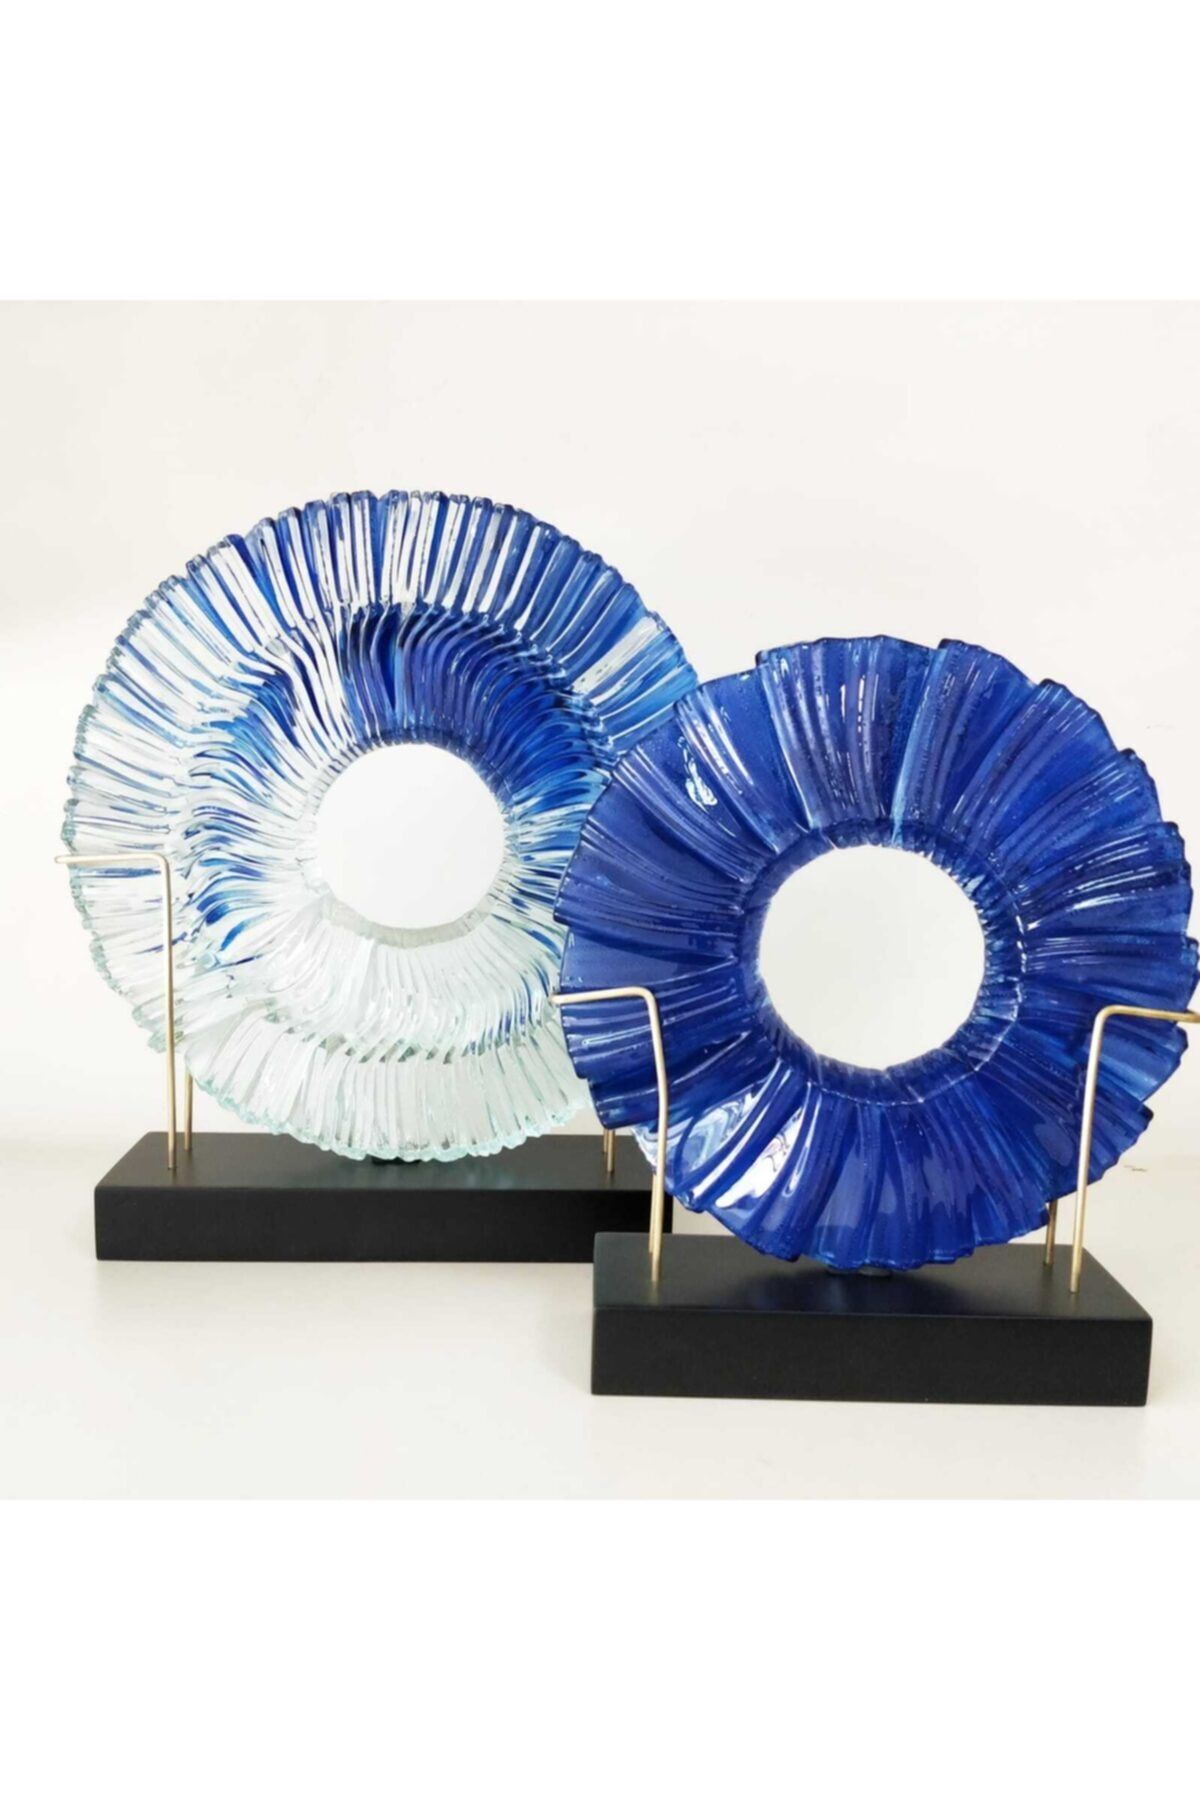 Acaipbi'dükkan Sanatçının Orijinal Ürünü Dekoratif Cam Disk Takımı Mavi Geçişli 22 Ve 27cm